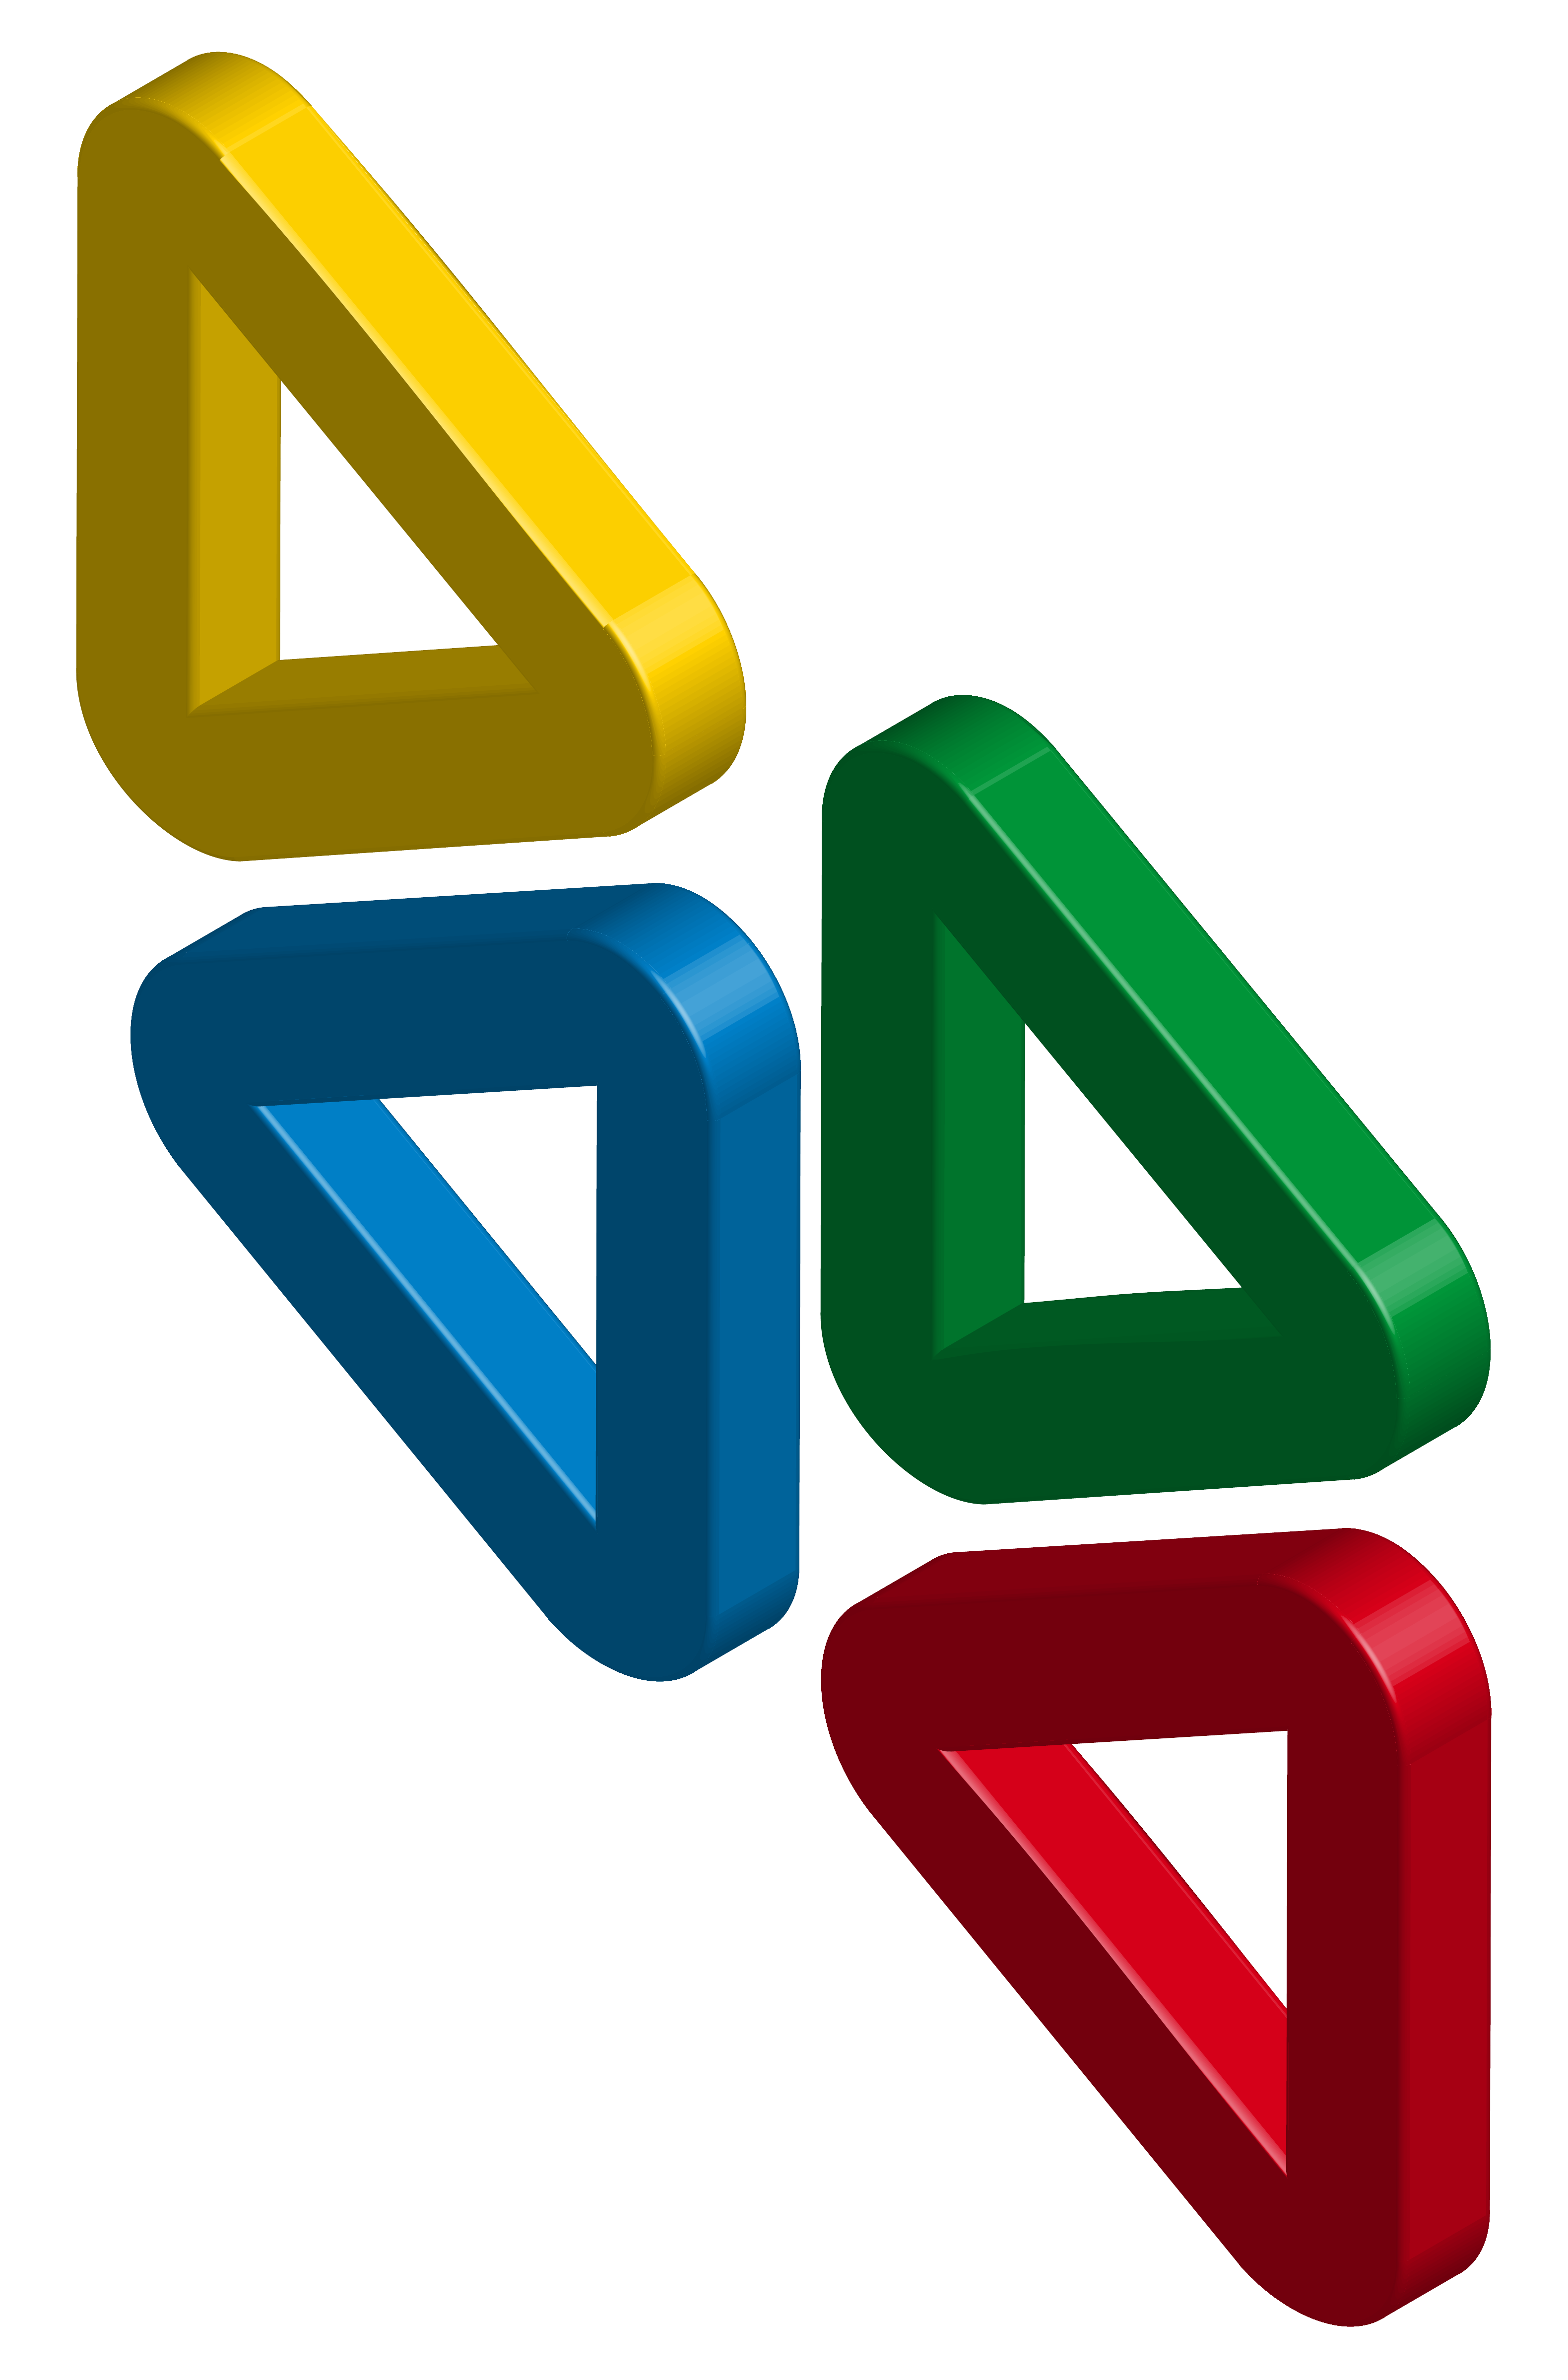 4 símbolos en forma de triángulos en 3D en los 4 colores corpotativos del Grupo Social ONCE que representan Tiflotecnología